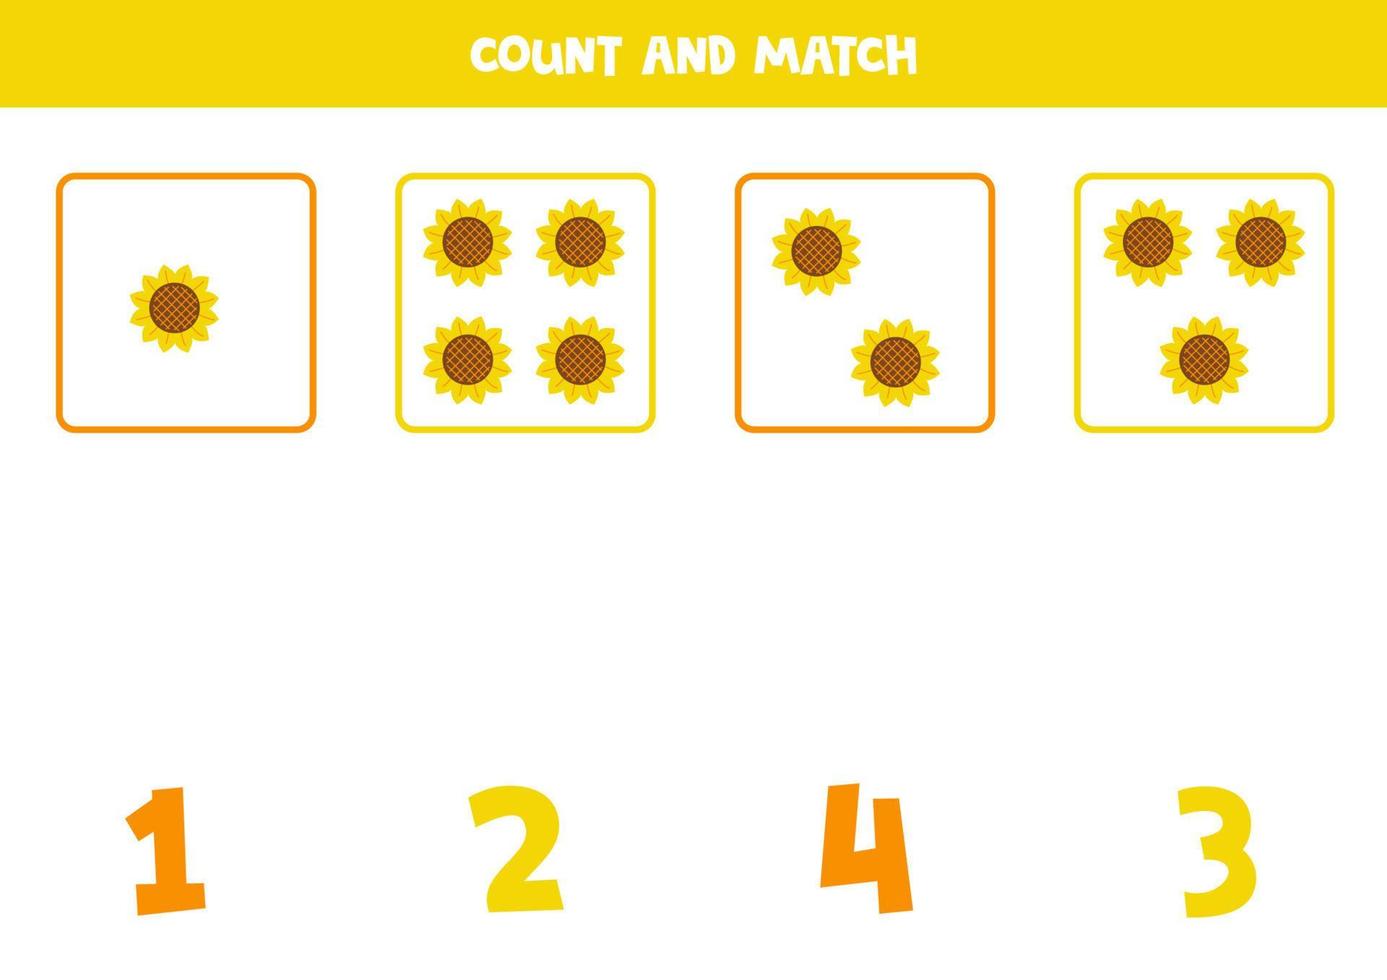 juego de conteo para niños. cuente todas las flores del sol y haga coincidir con los números. hoja de trabajo para niños. vector